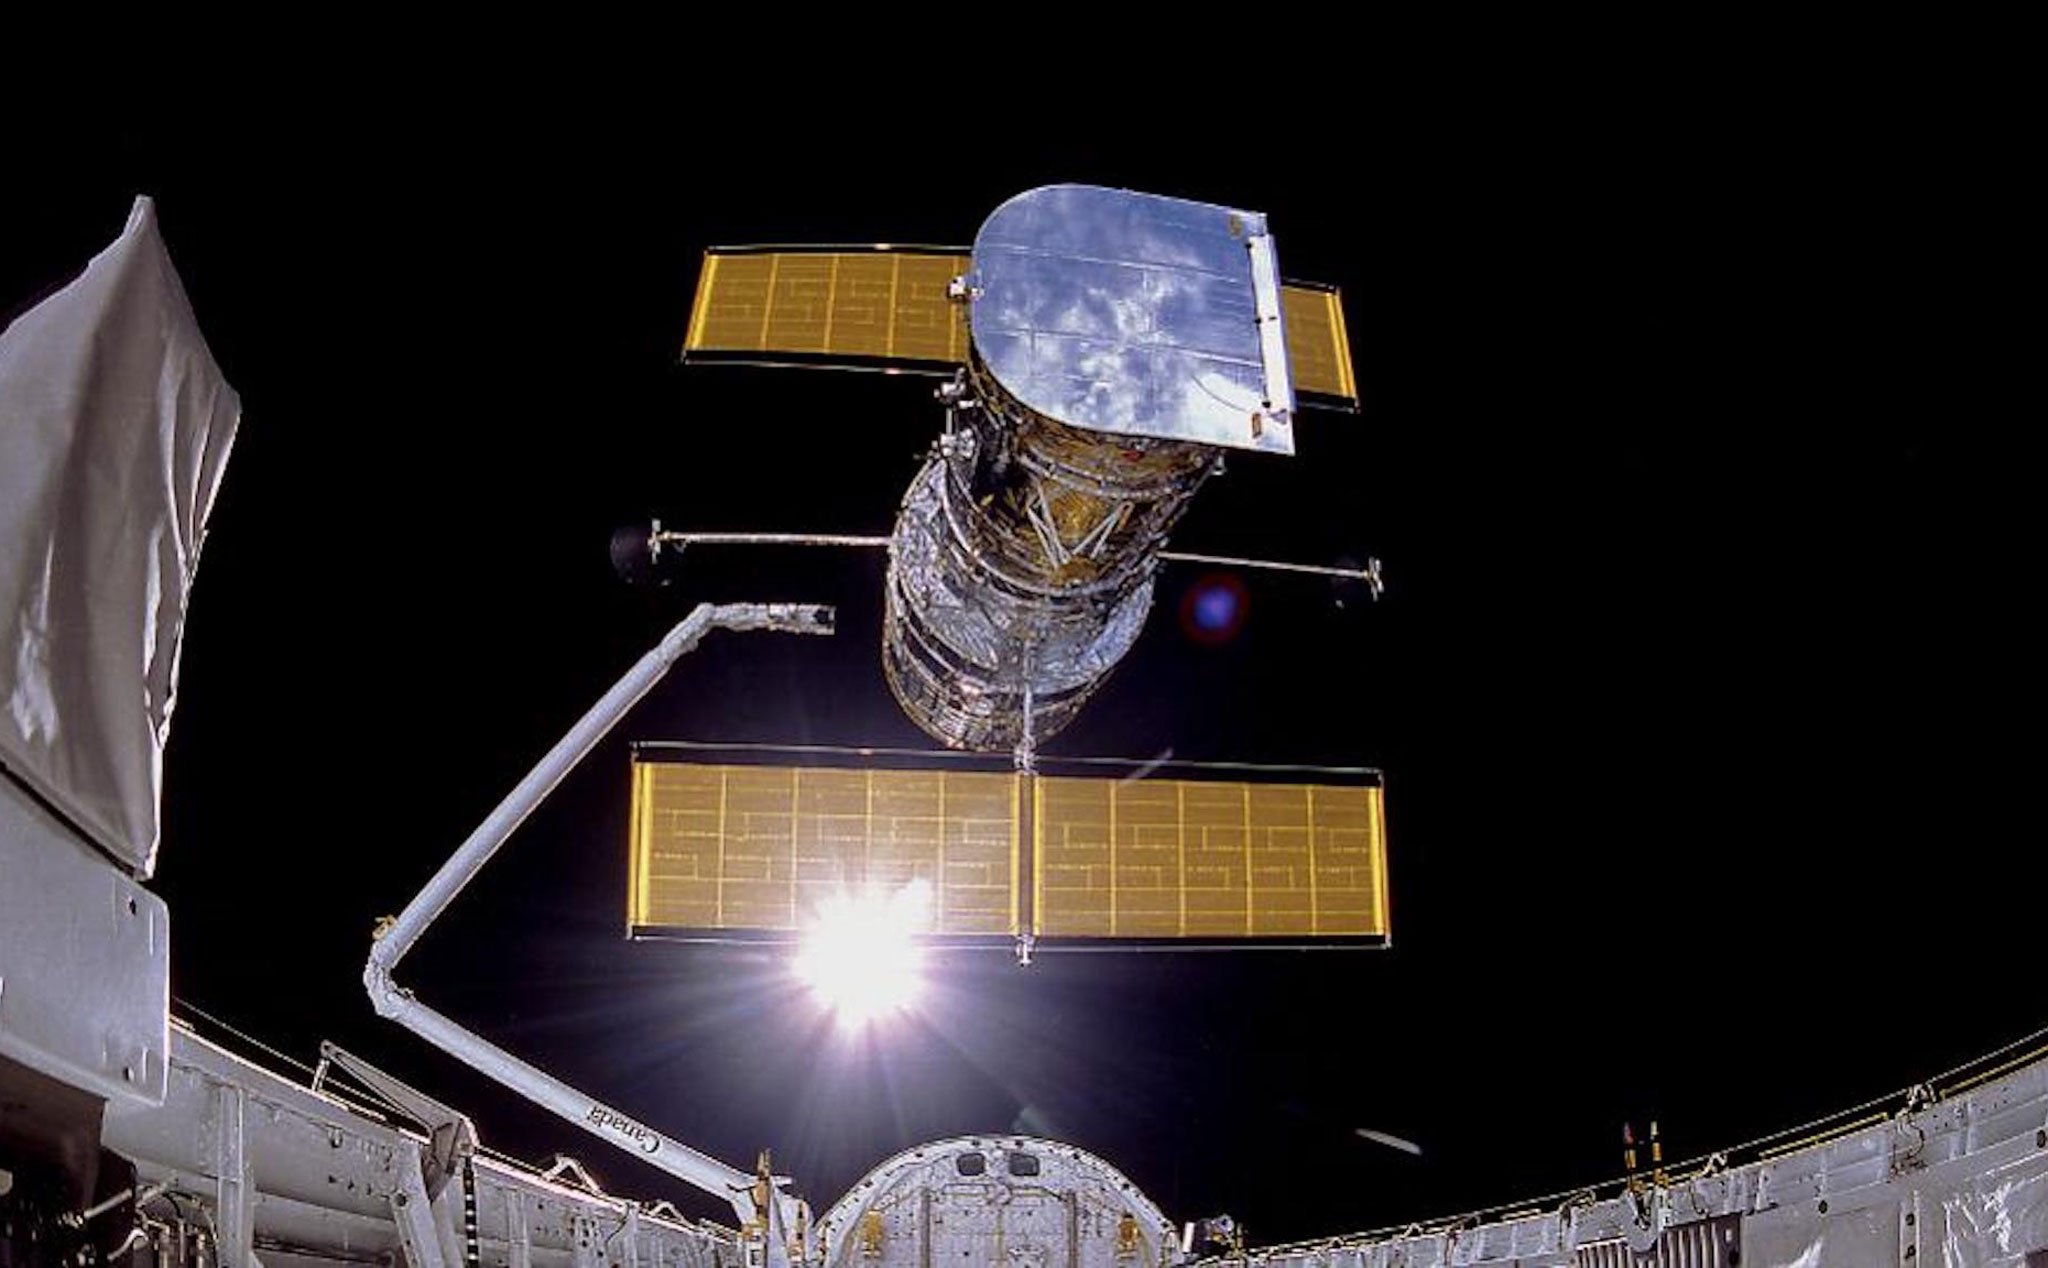 Nhìn lại những tấm ảnh đẹp chụp từ kính viễn vọng Hubble trong thập kỉ 2010s vừa qua